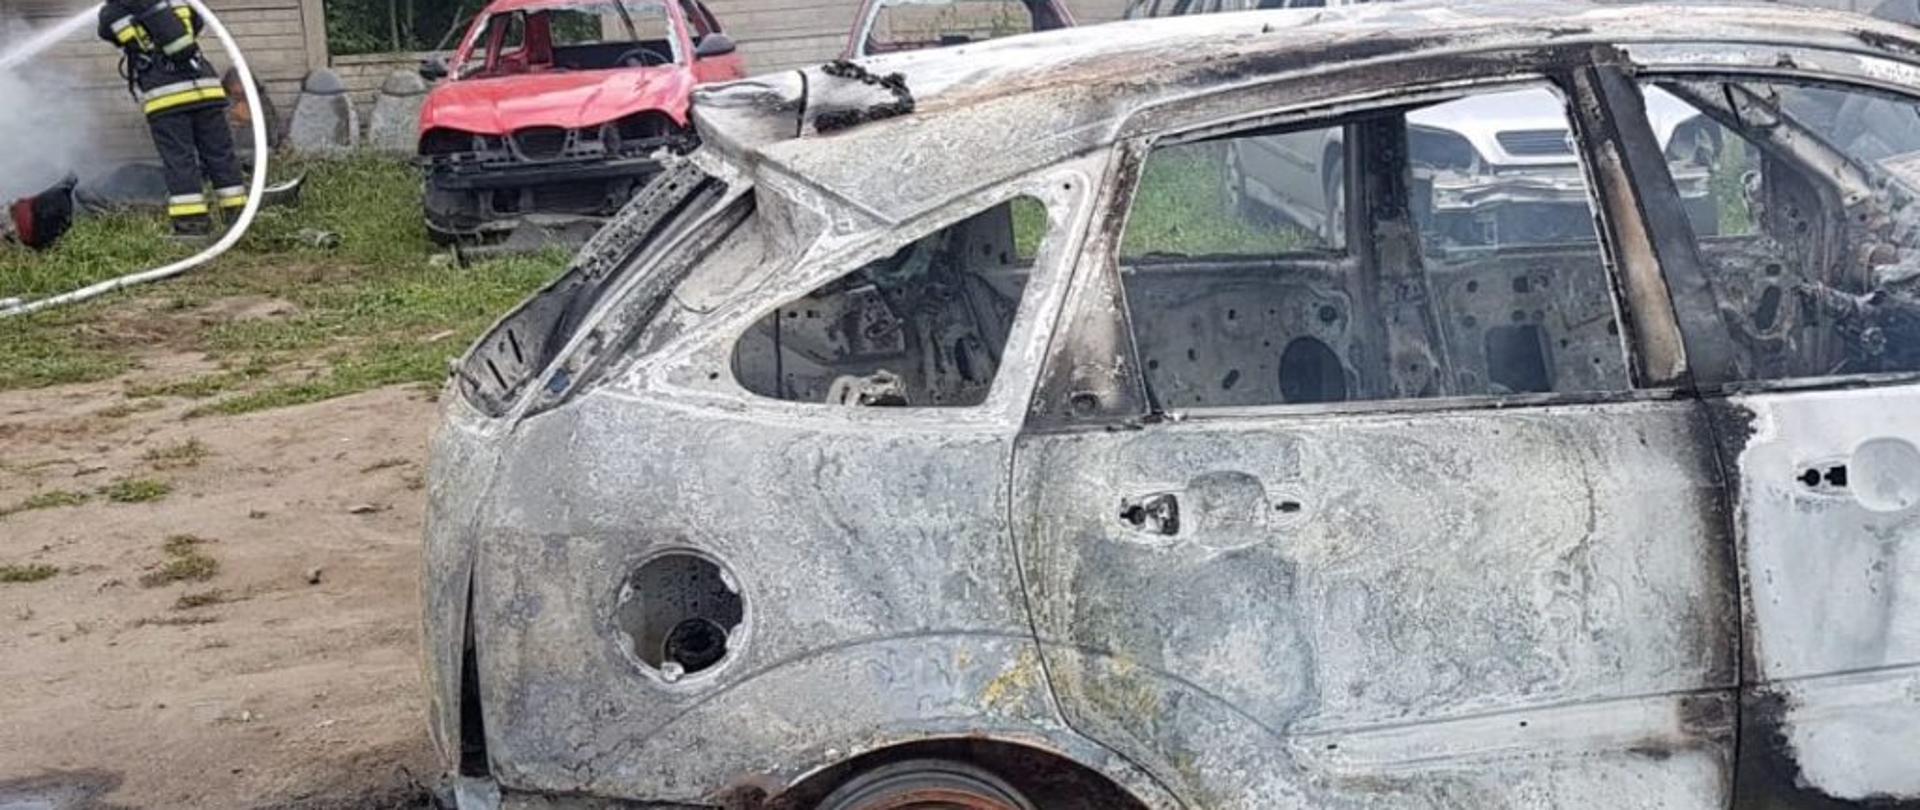 Zdjęcie przedstawia tył spalonego auta podczas akcji - pozostała sama karoseria